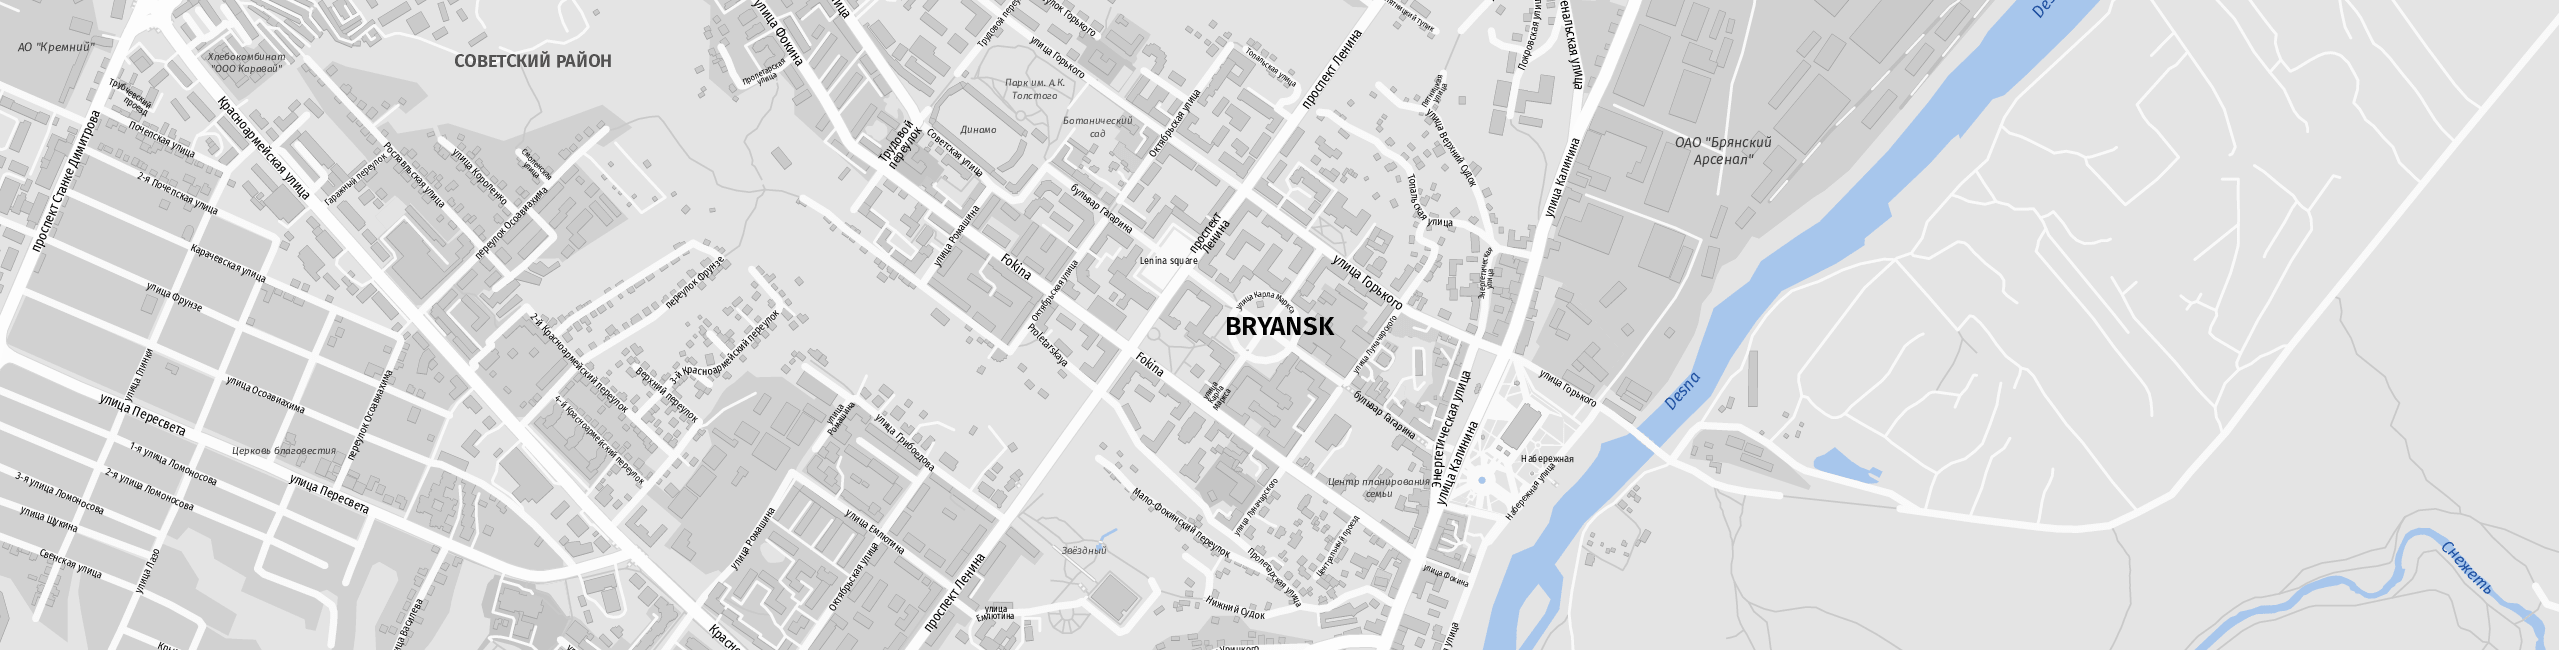 Stadtplan Bryansk zum Downloaden.